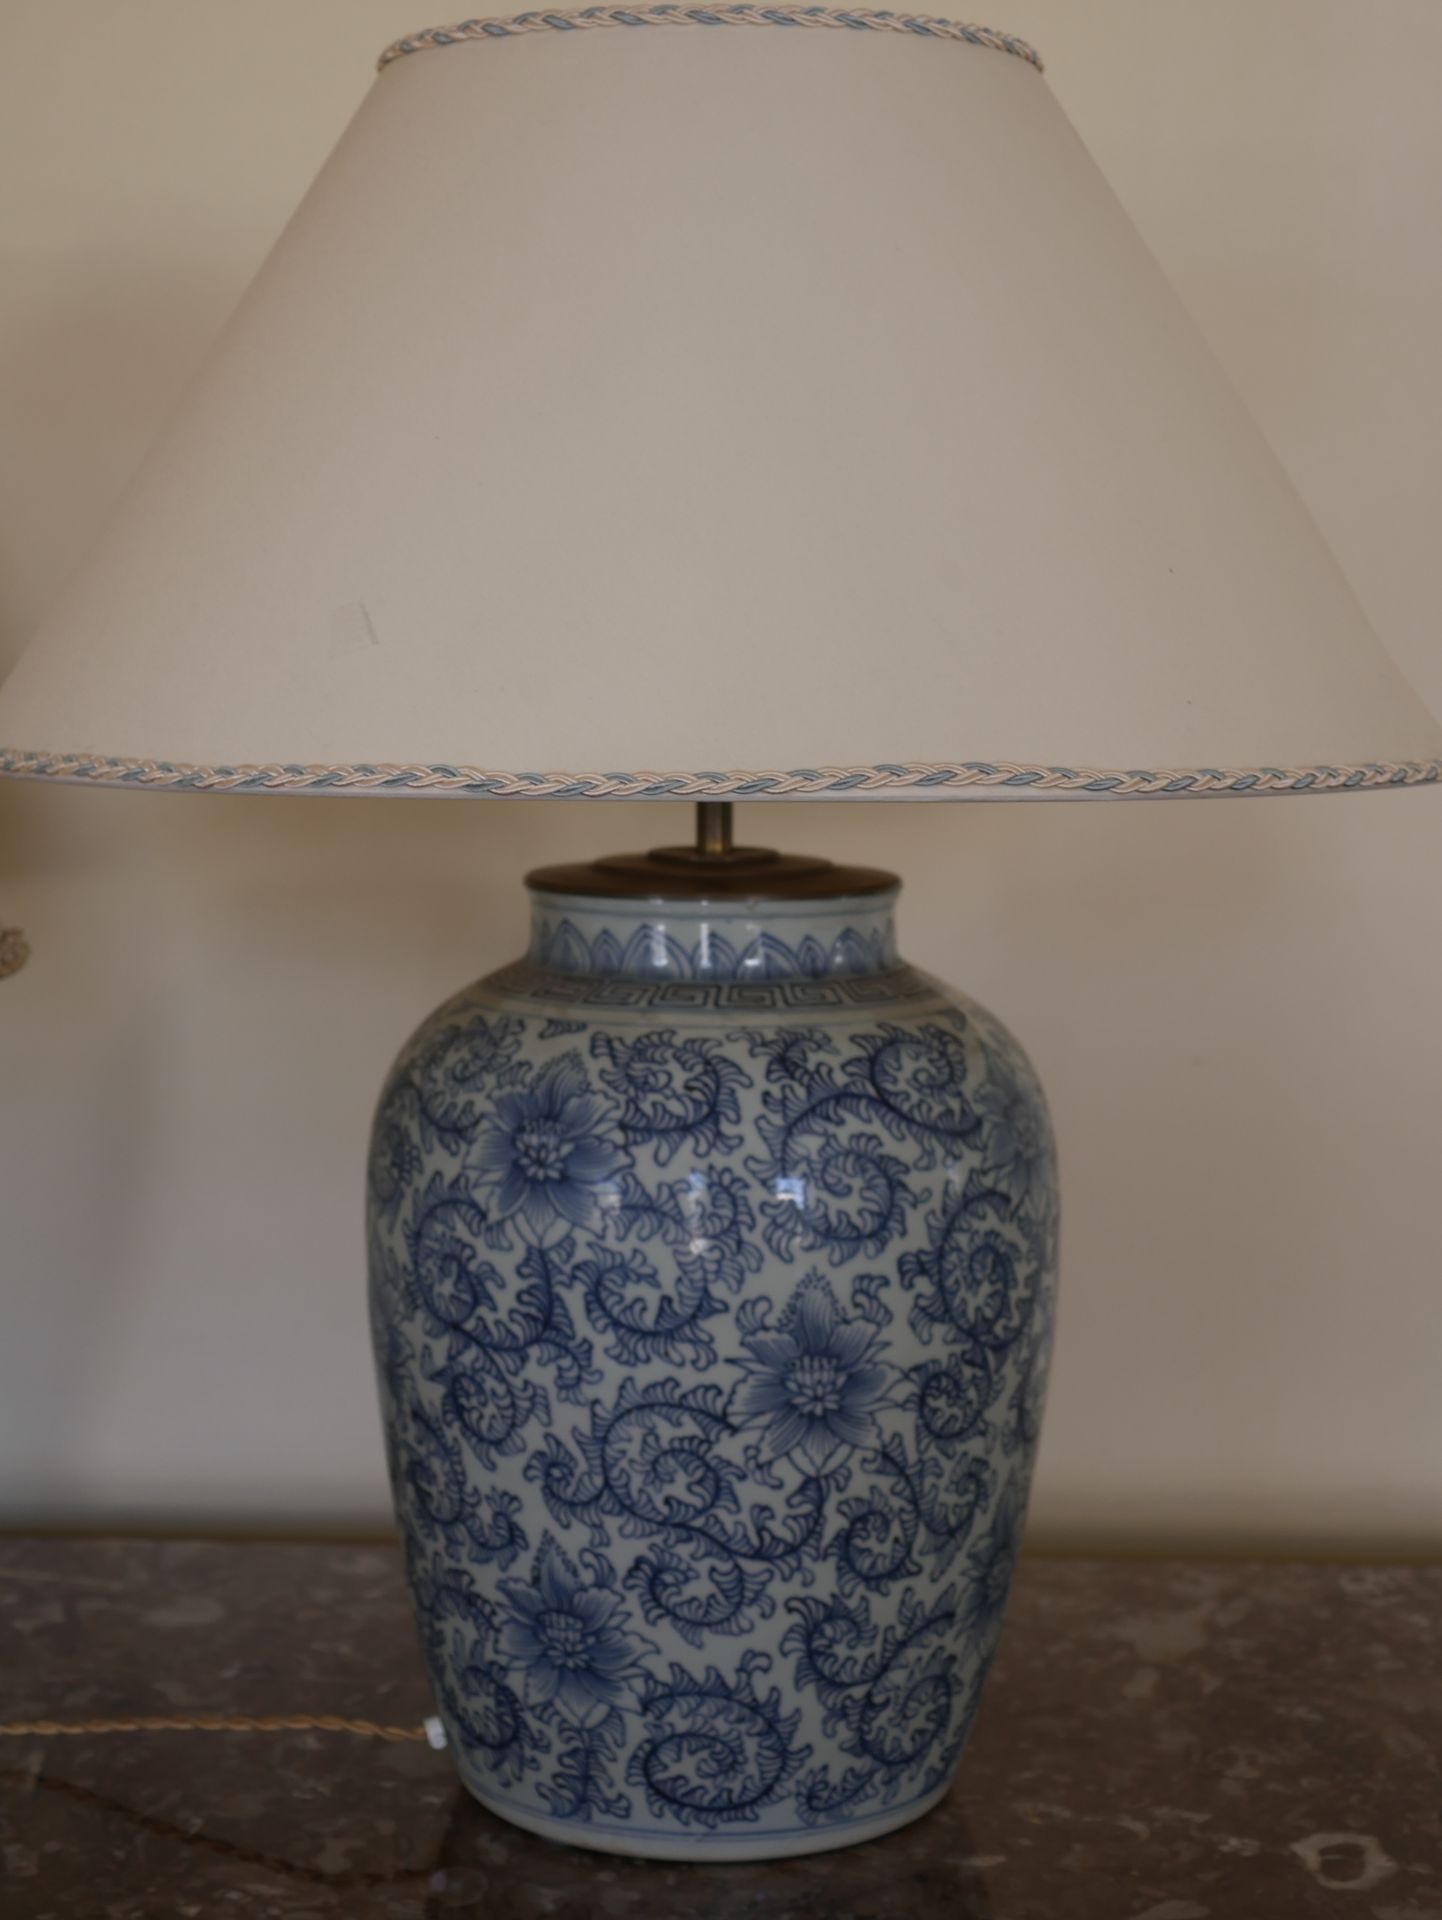 Null 青花瓷灯座，饰以远东风格的叶卷荷花。高42厘米。